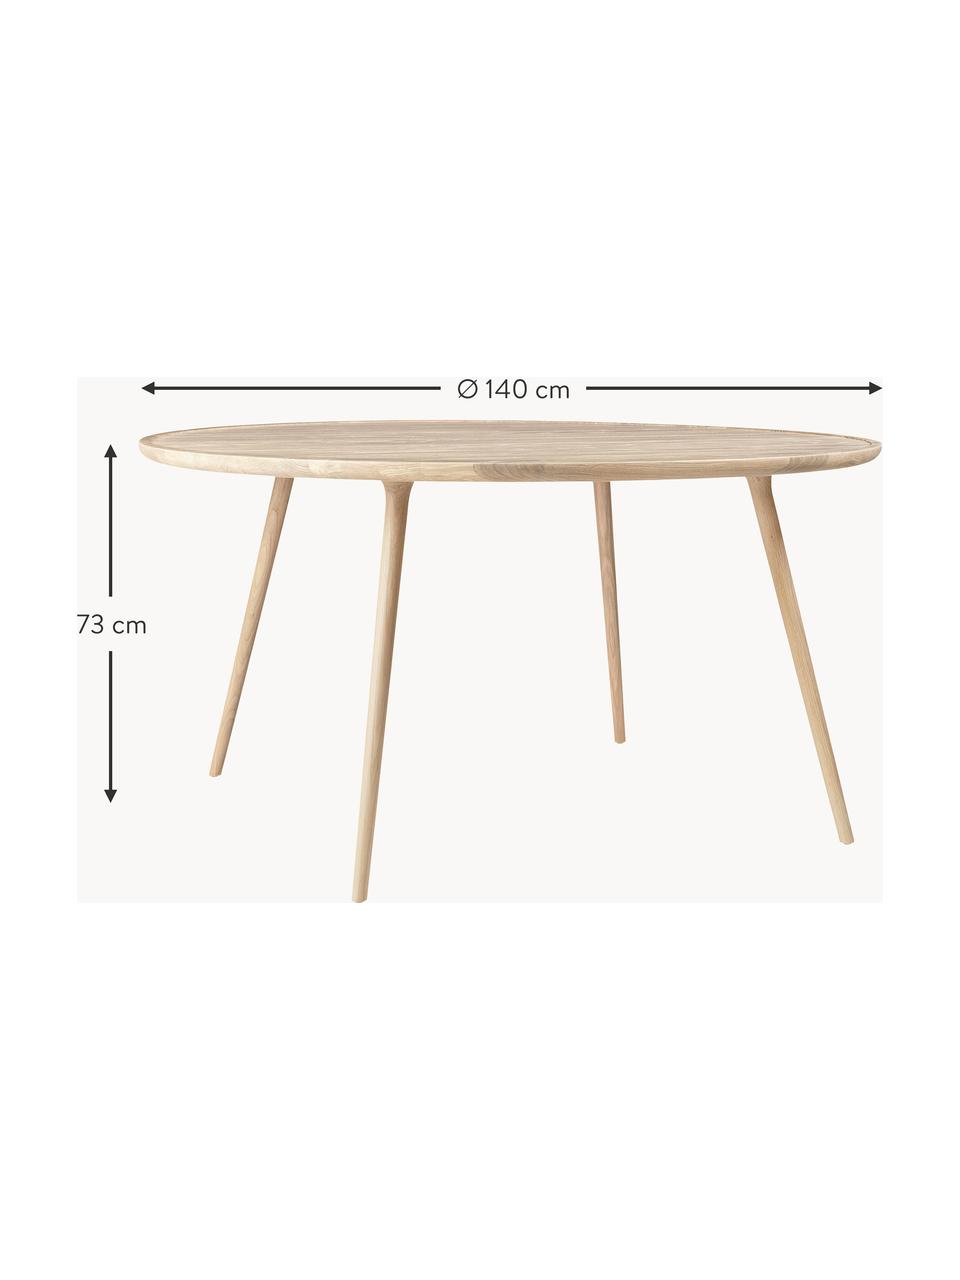 Kulatý jídelní stůl z dubového dřeva Accent, různé velikosti, Dubové dřevo

Tento produkt je vyroben z udržitelných zdrojů dřeva s certifikací FSC®., Dubové dřevo, Ø 140 cm, V 73 cm